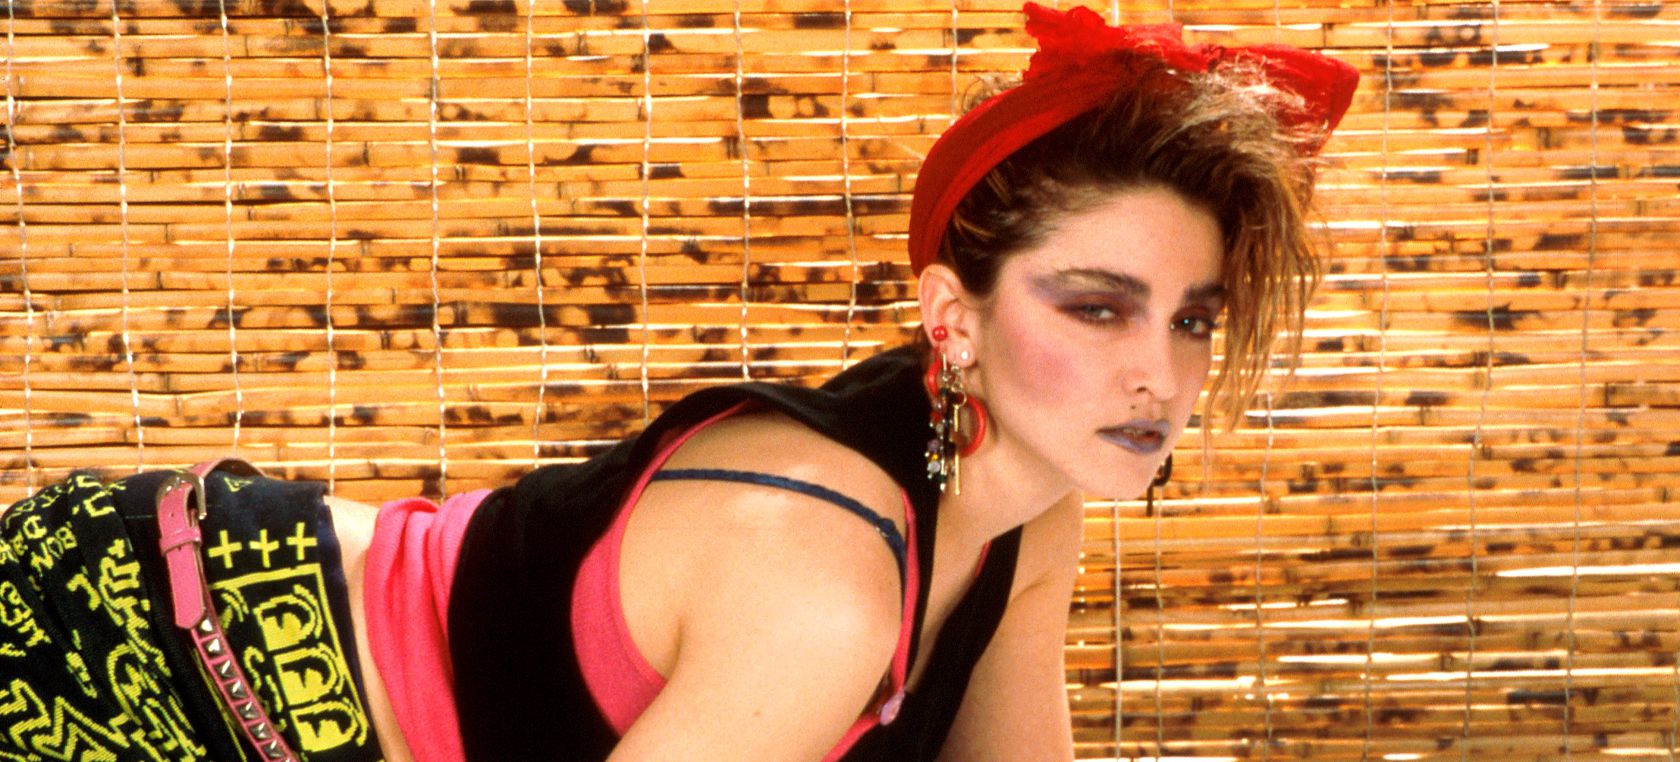 Cancelado el biopic sobre la vida de Madonna